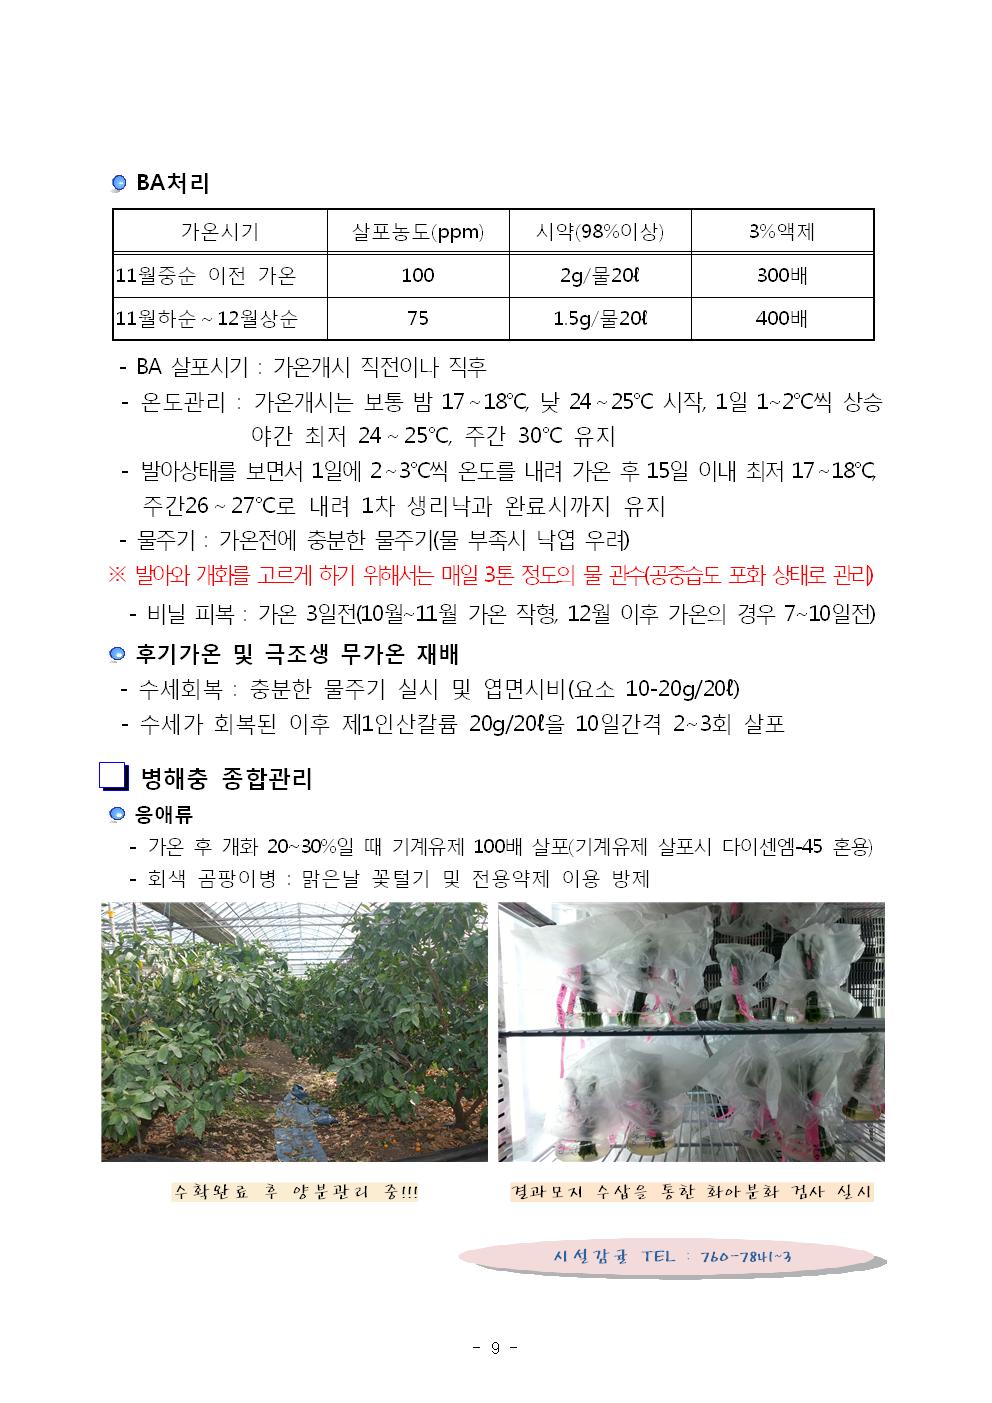 서귀포농업 인터넷정보지 11월호